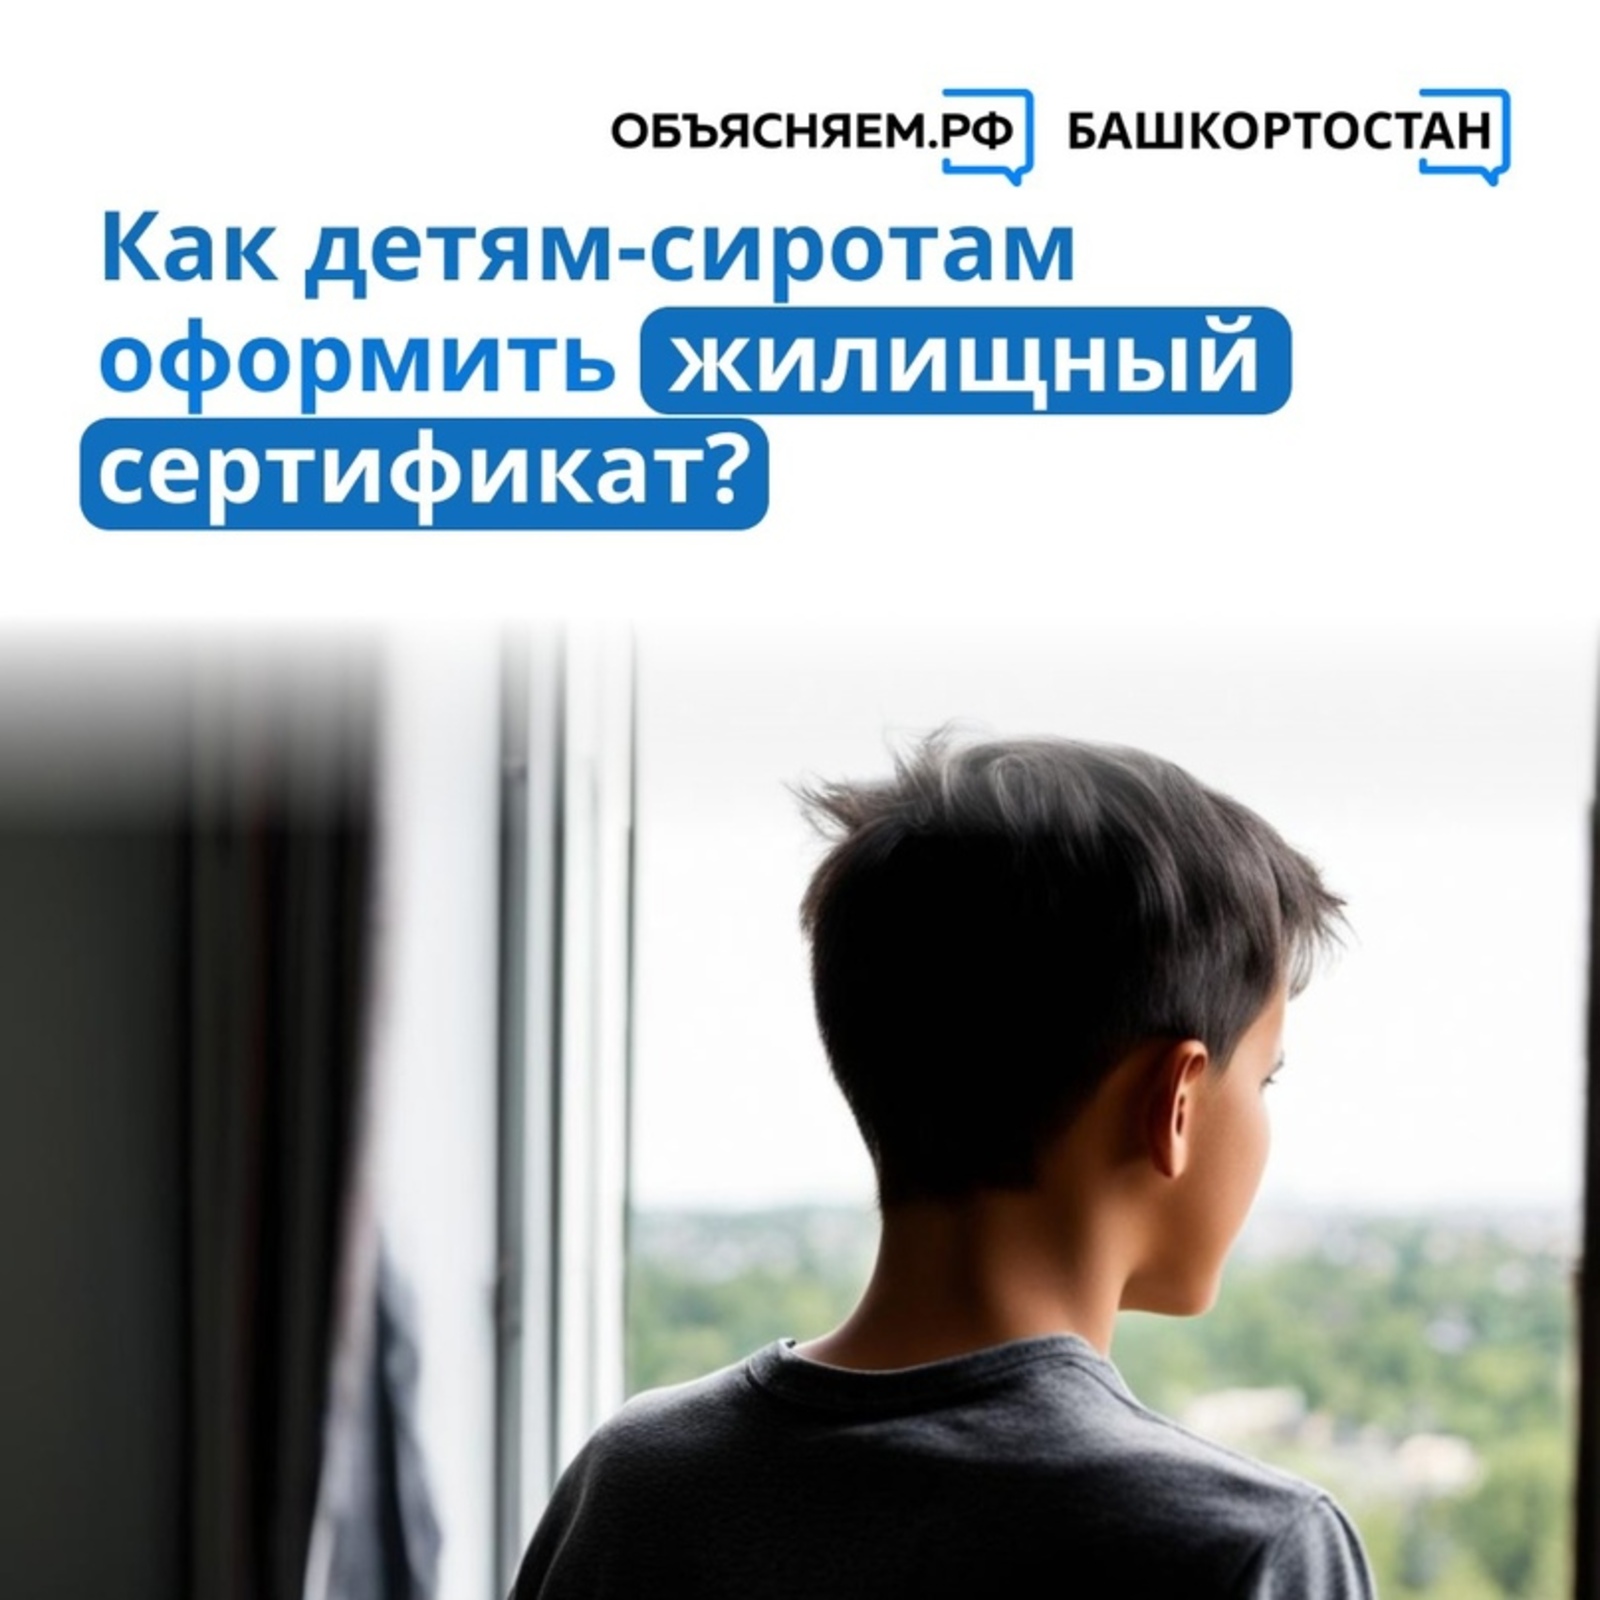 Как детям-сиротам оформить жилищный сертификат? - вопрос от жителя с. Архангельское Николая И.